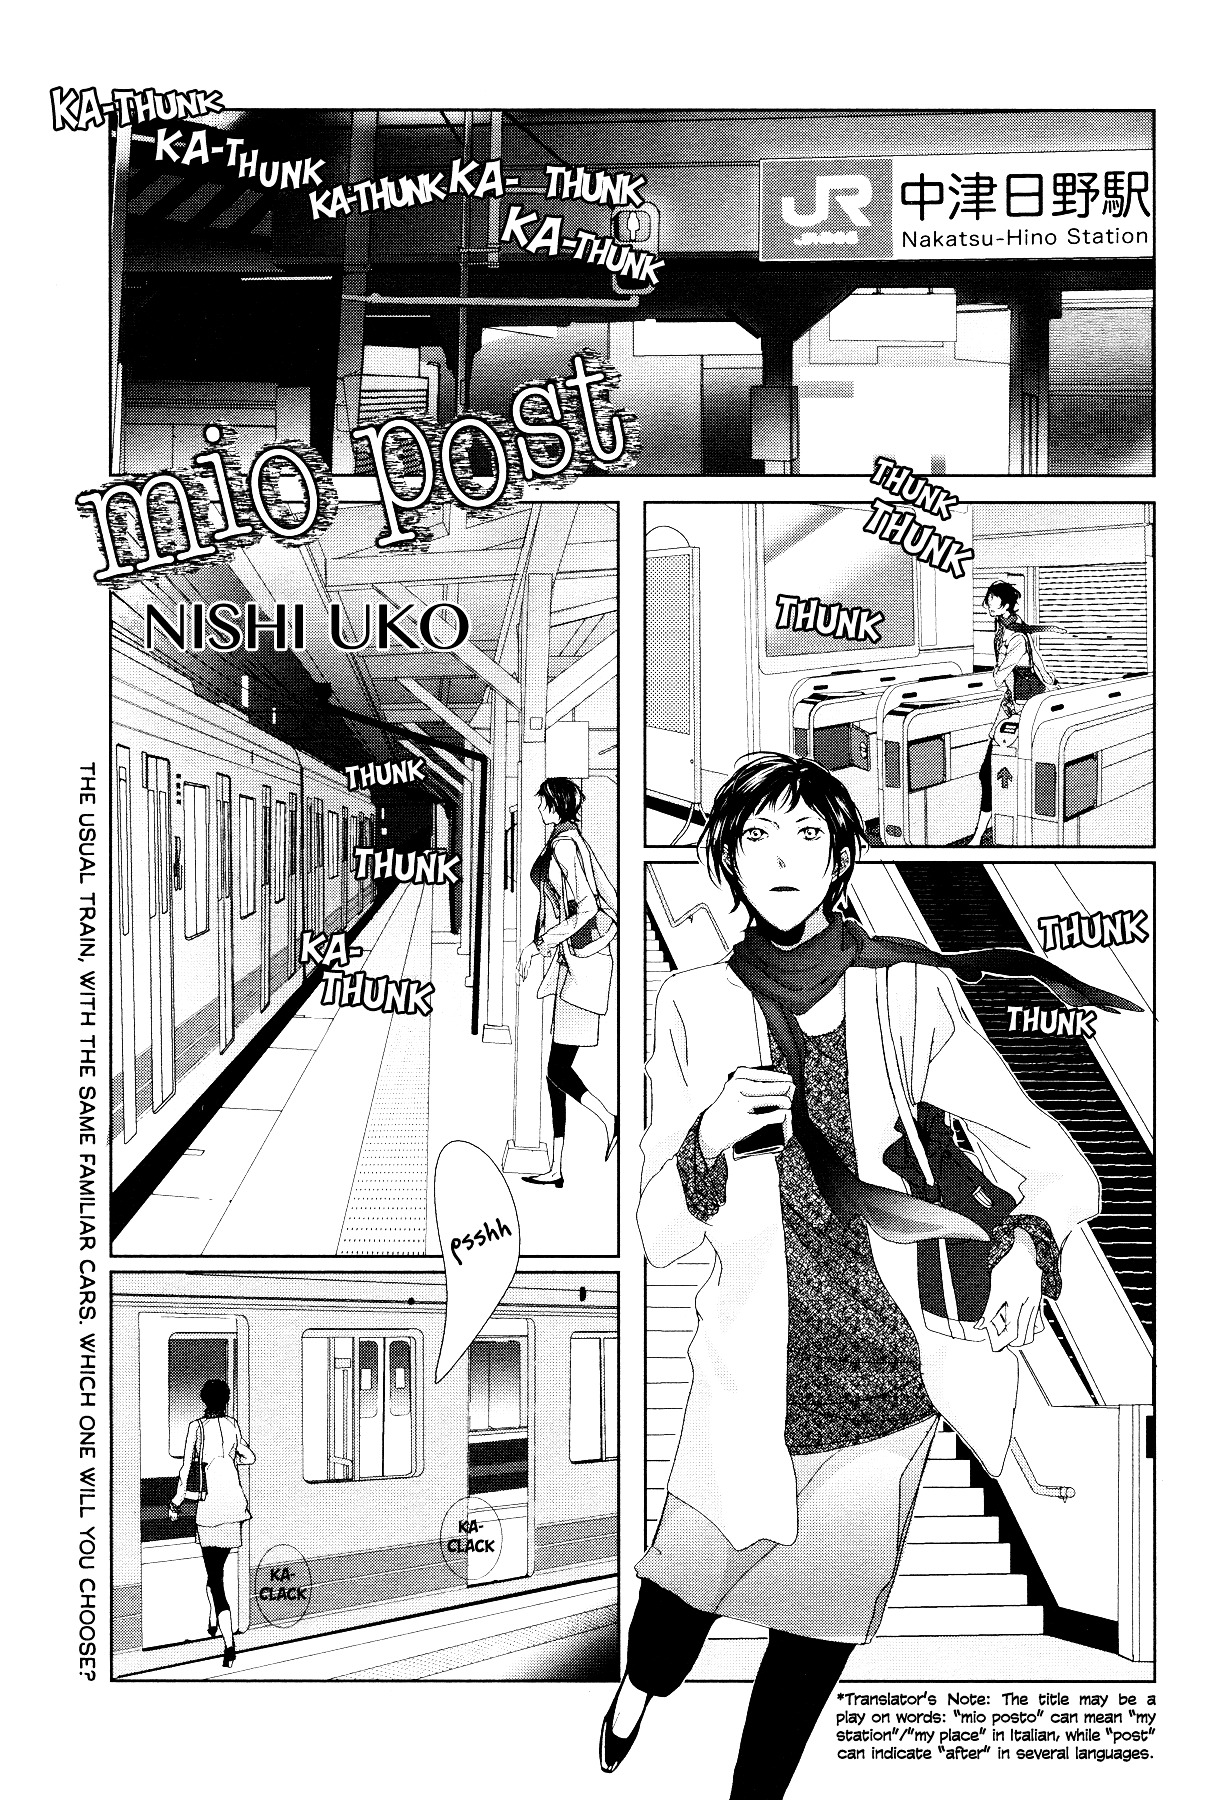 Mio Post (Nishi Uko) - Page 2